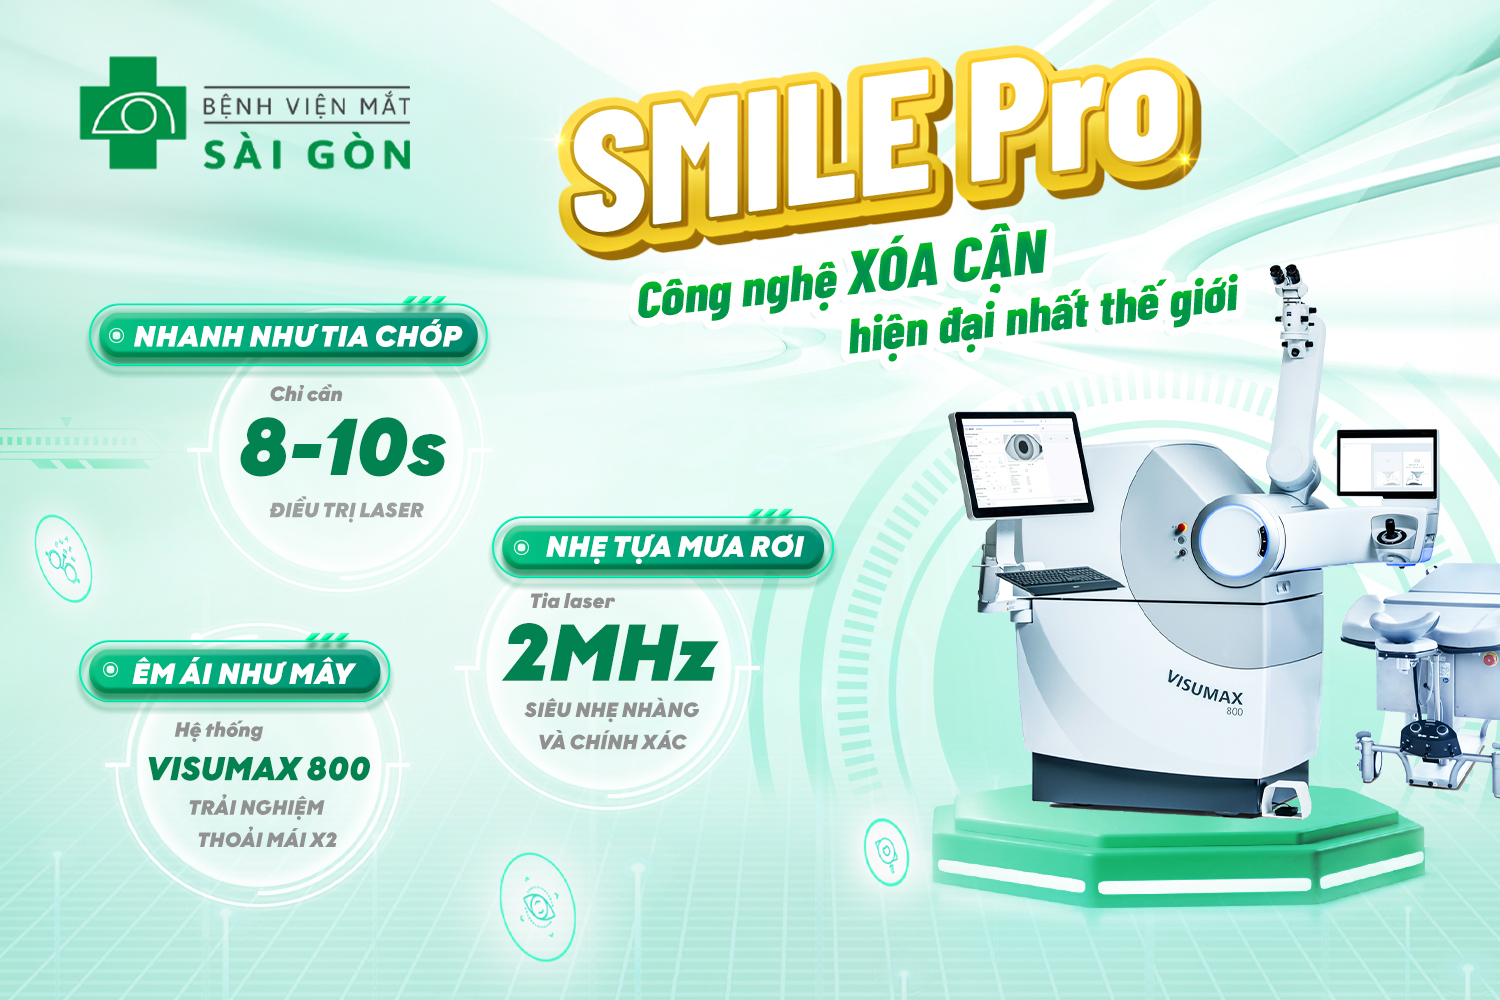 Mắt Sài Gòn đồng loạt triển khai công nghệ xóa cận SMILE Pro